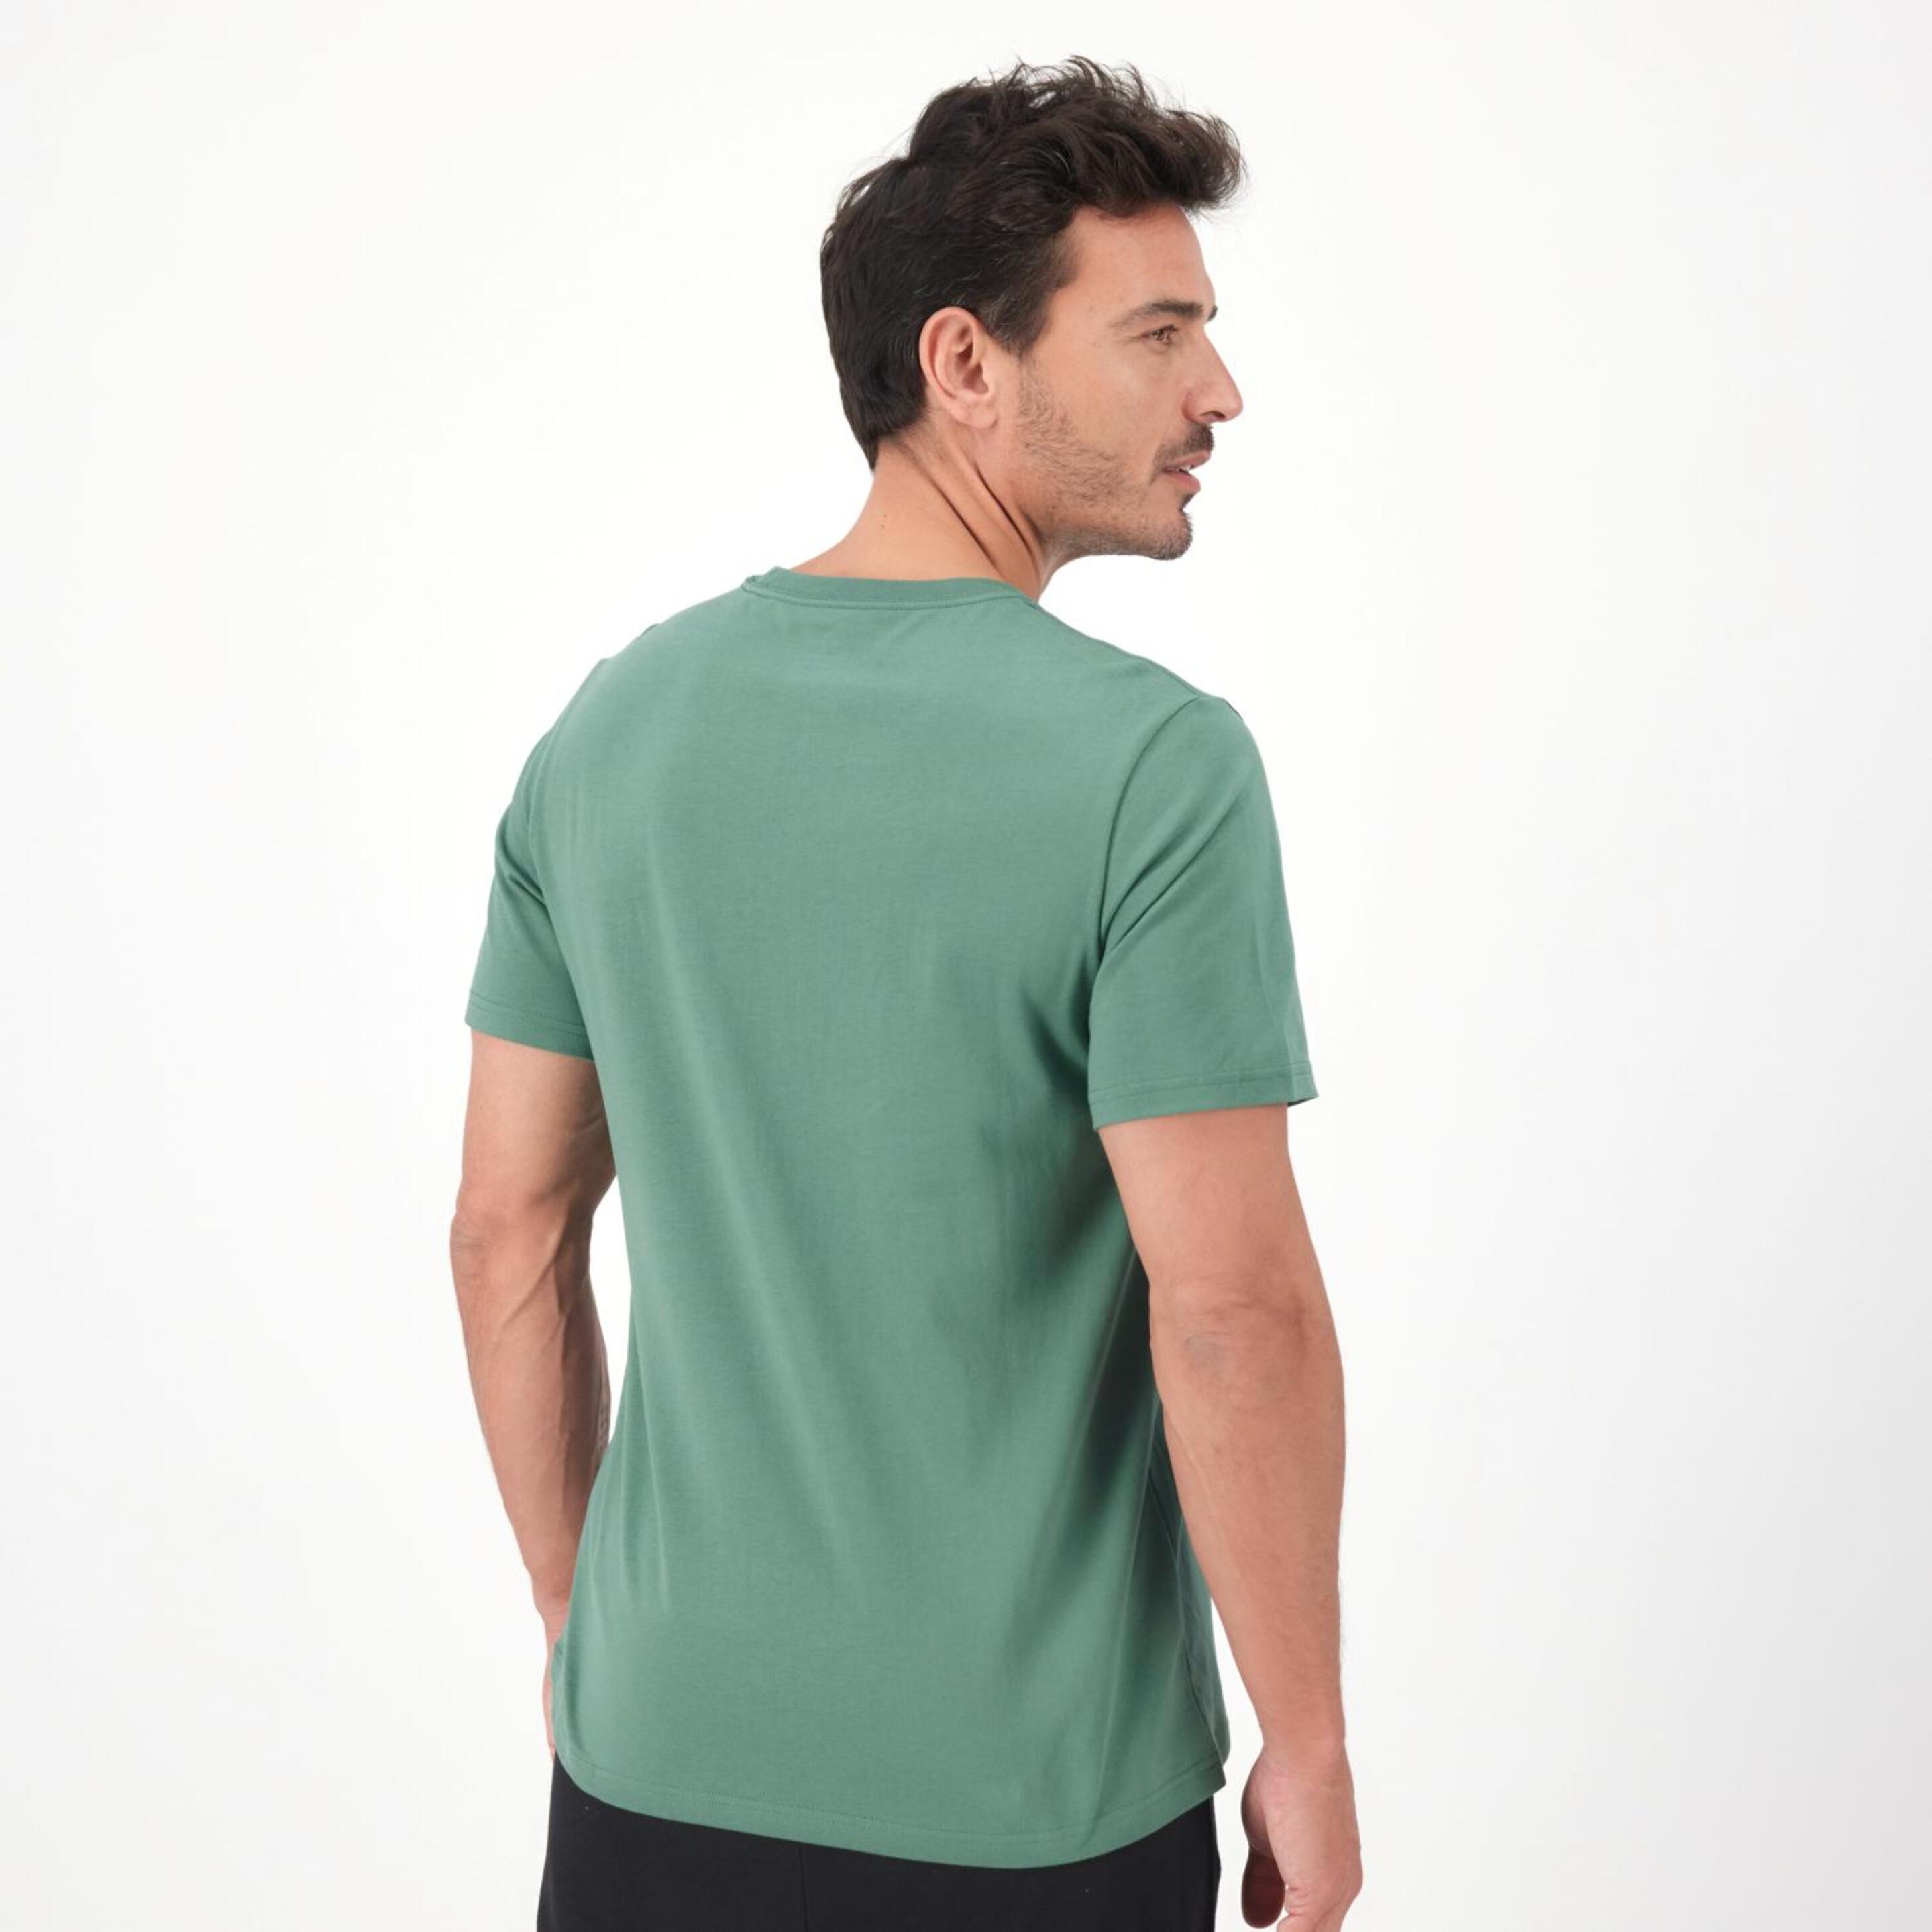 Converse Star Chevron - Verde - Camiseta Hombre  | Sprinter